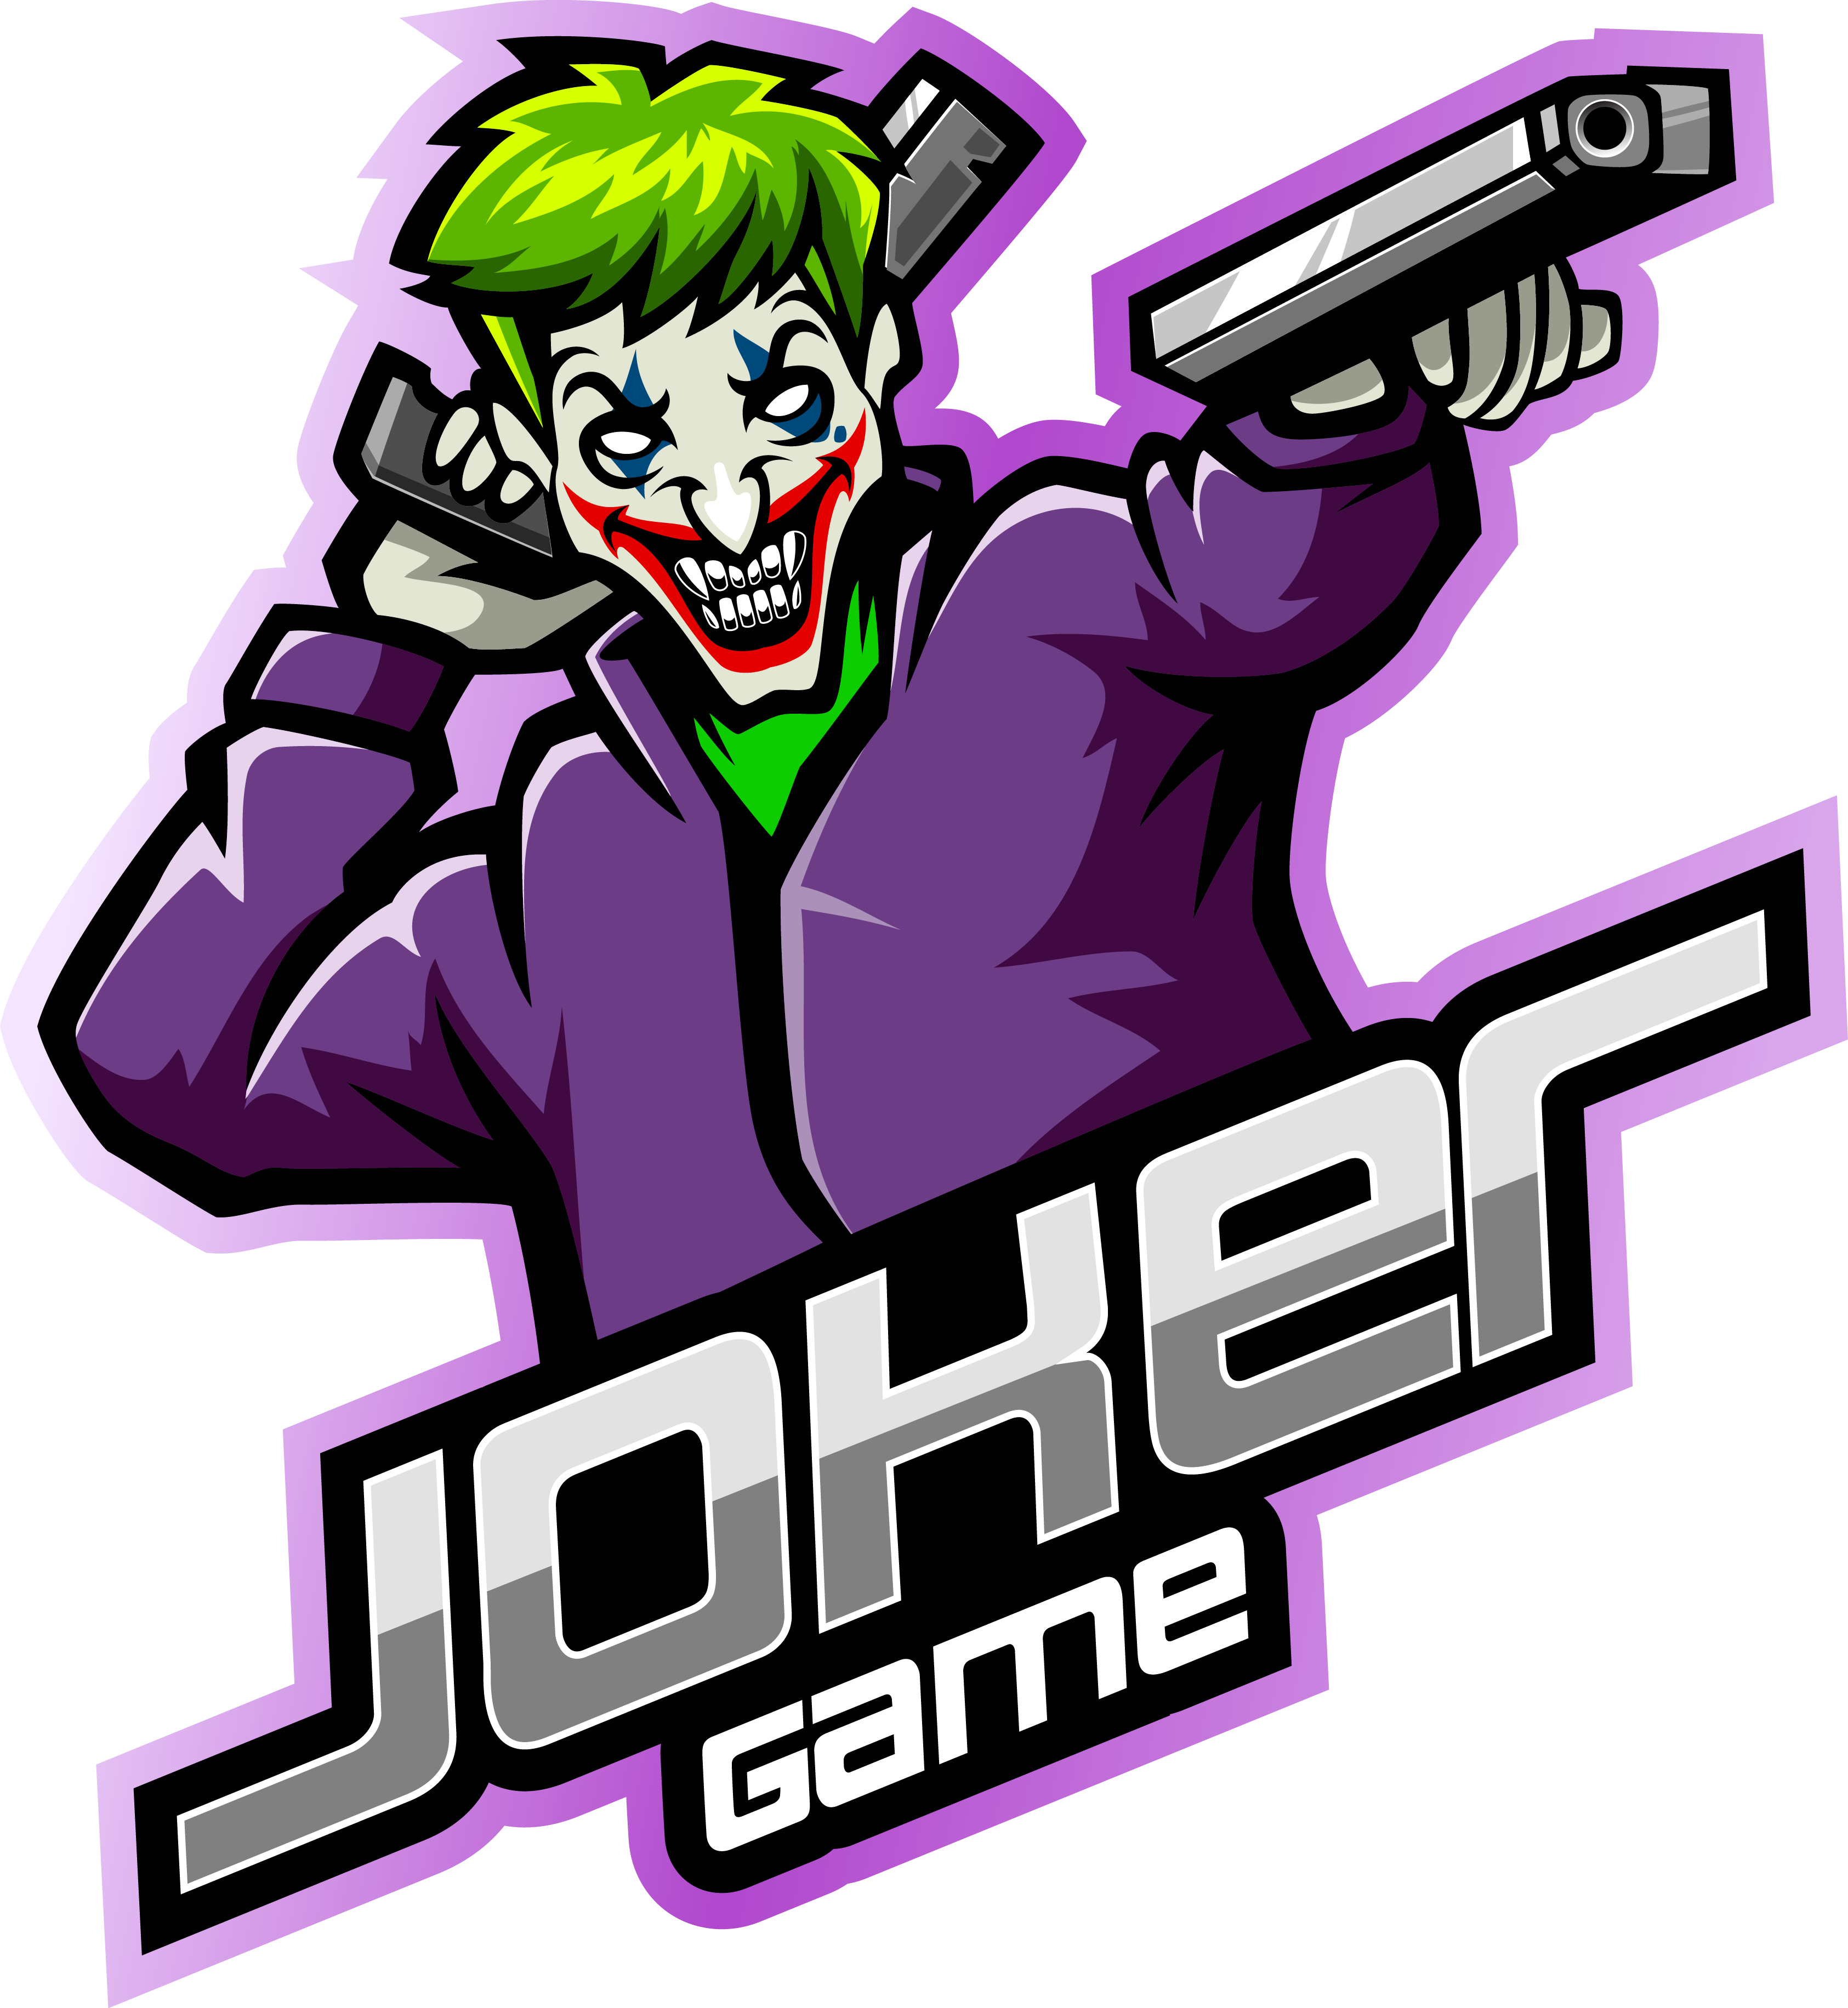 Joker gunner esport mascot logo design By Visink | TheHungryJPEG